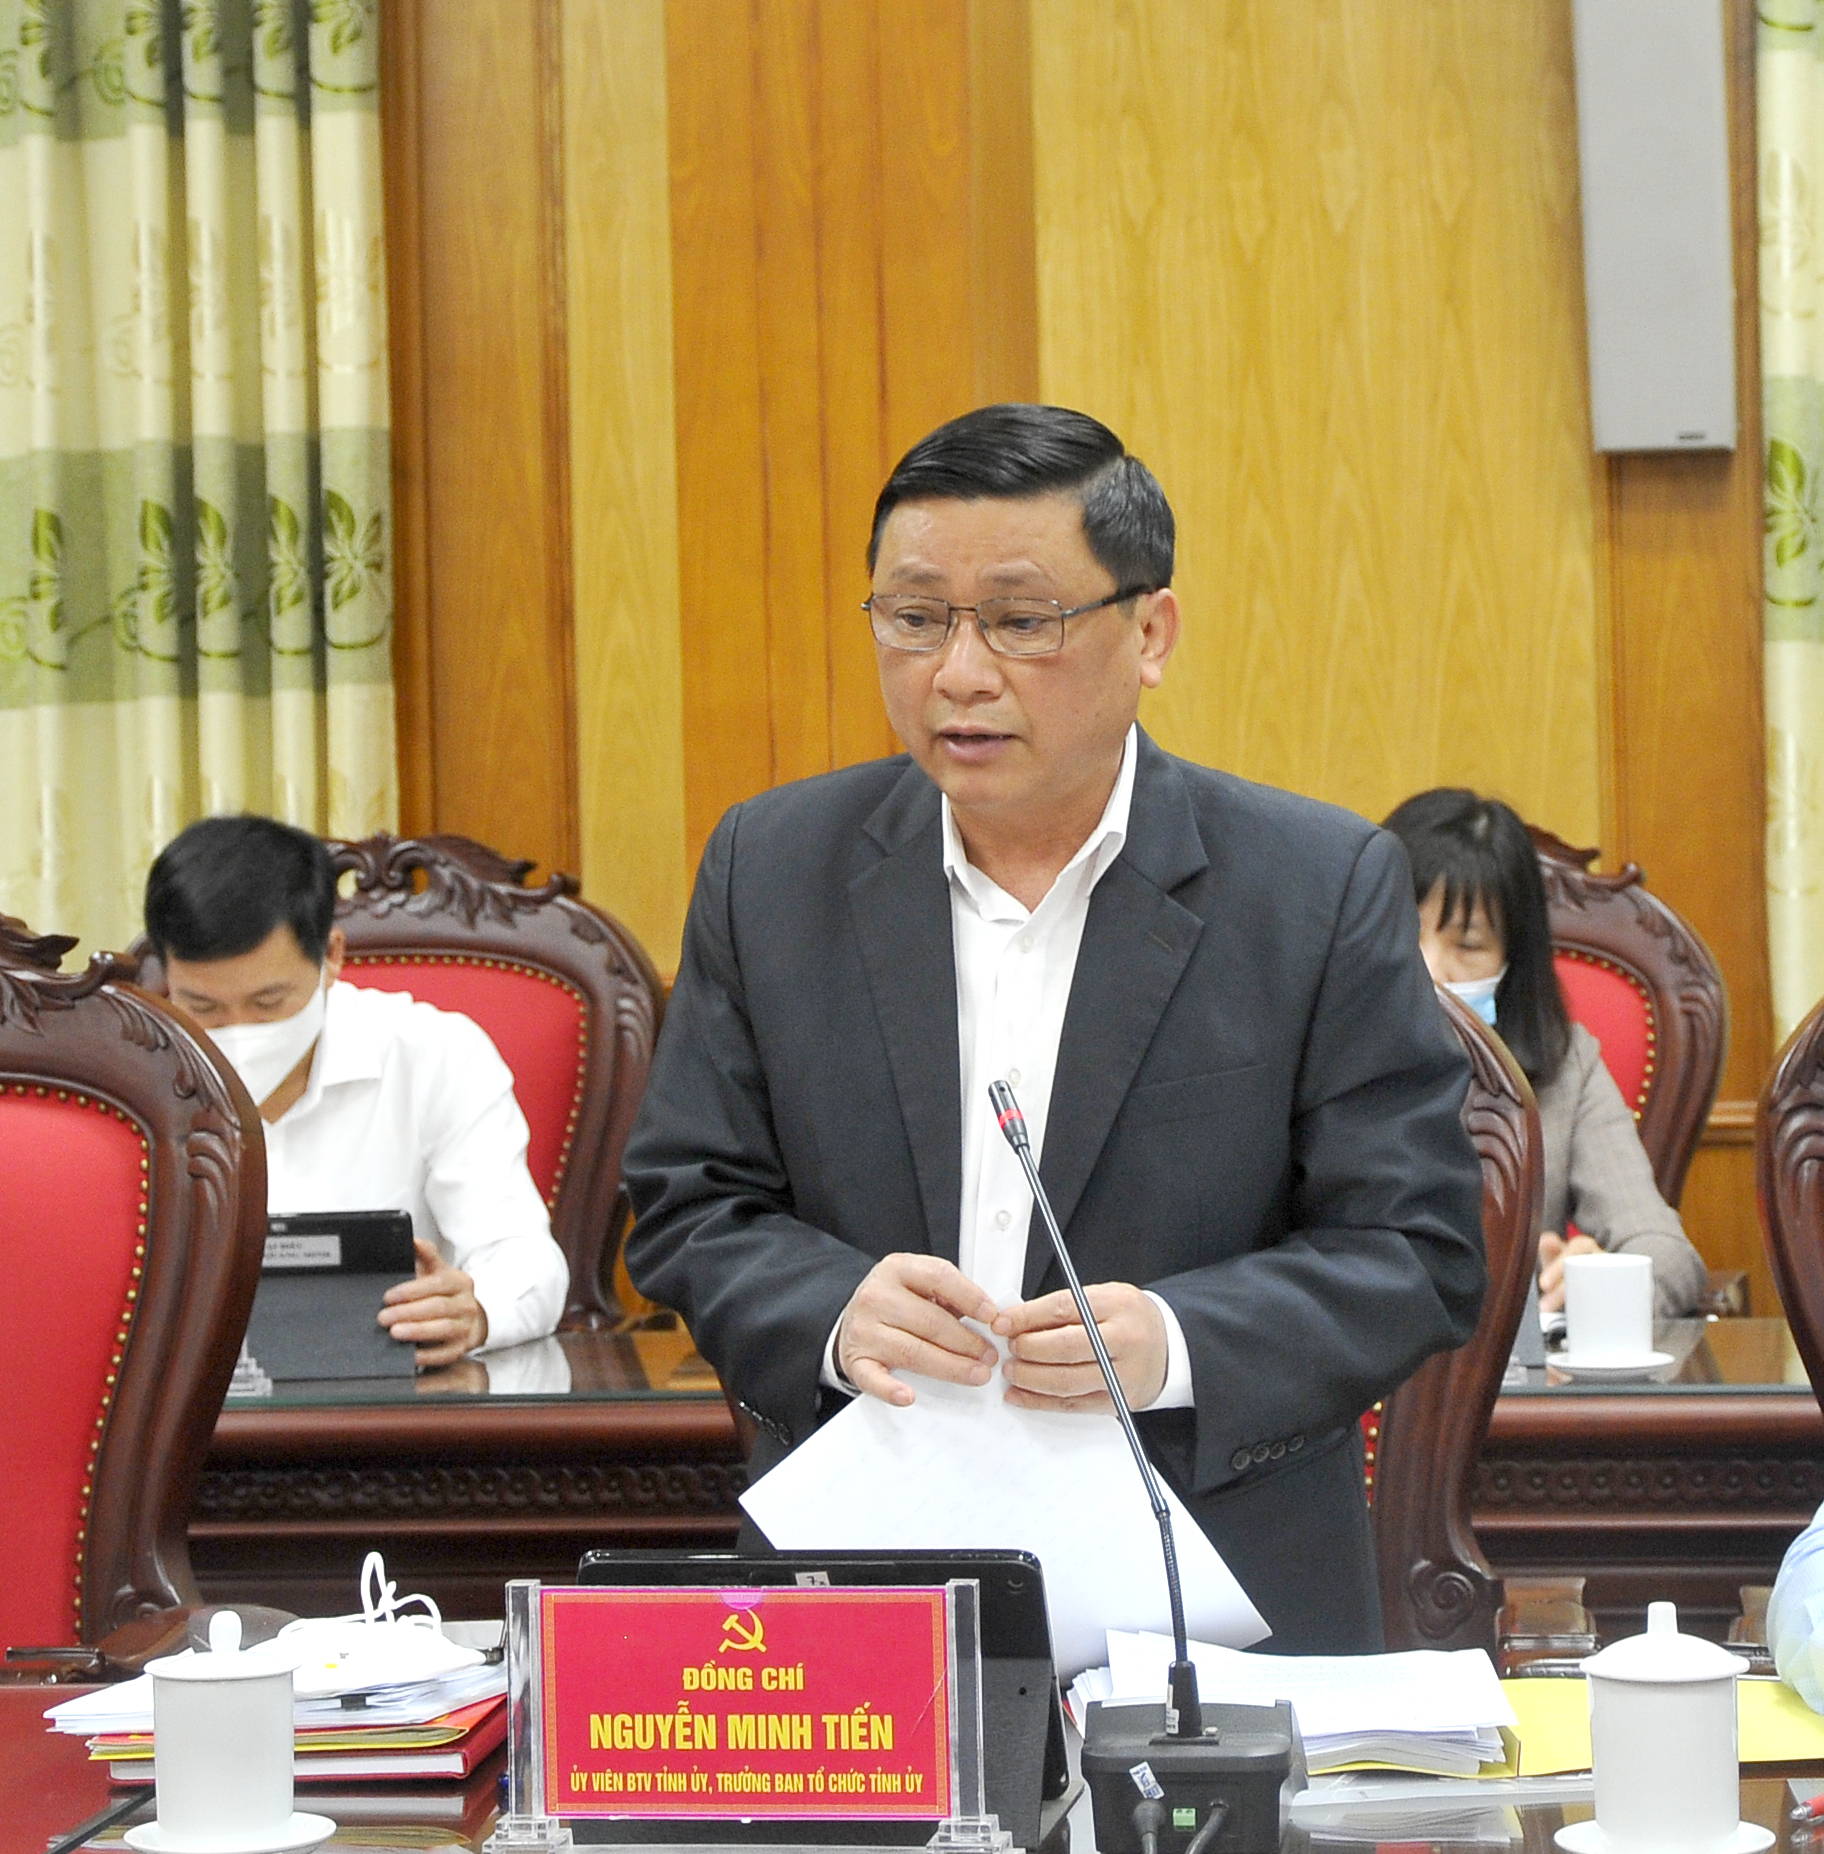 Trưởng Ban Tổ chức Tỉnh ủy Nguyễn Minh Tiến đề nghị cần có định hướng cụ thể để có thể hoàn thành mục tiêu xây dựng huyện đạt chuẩn NTM.